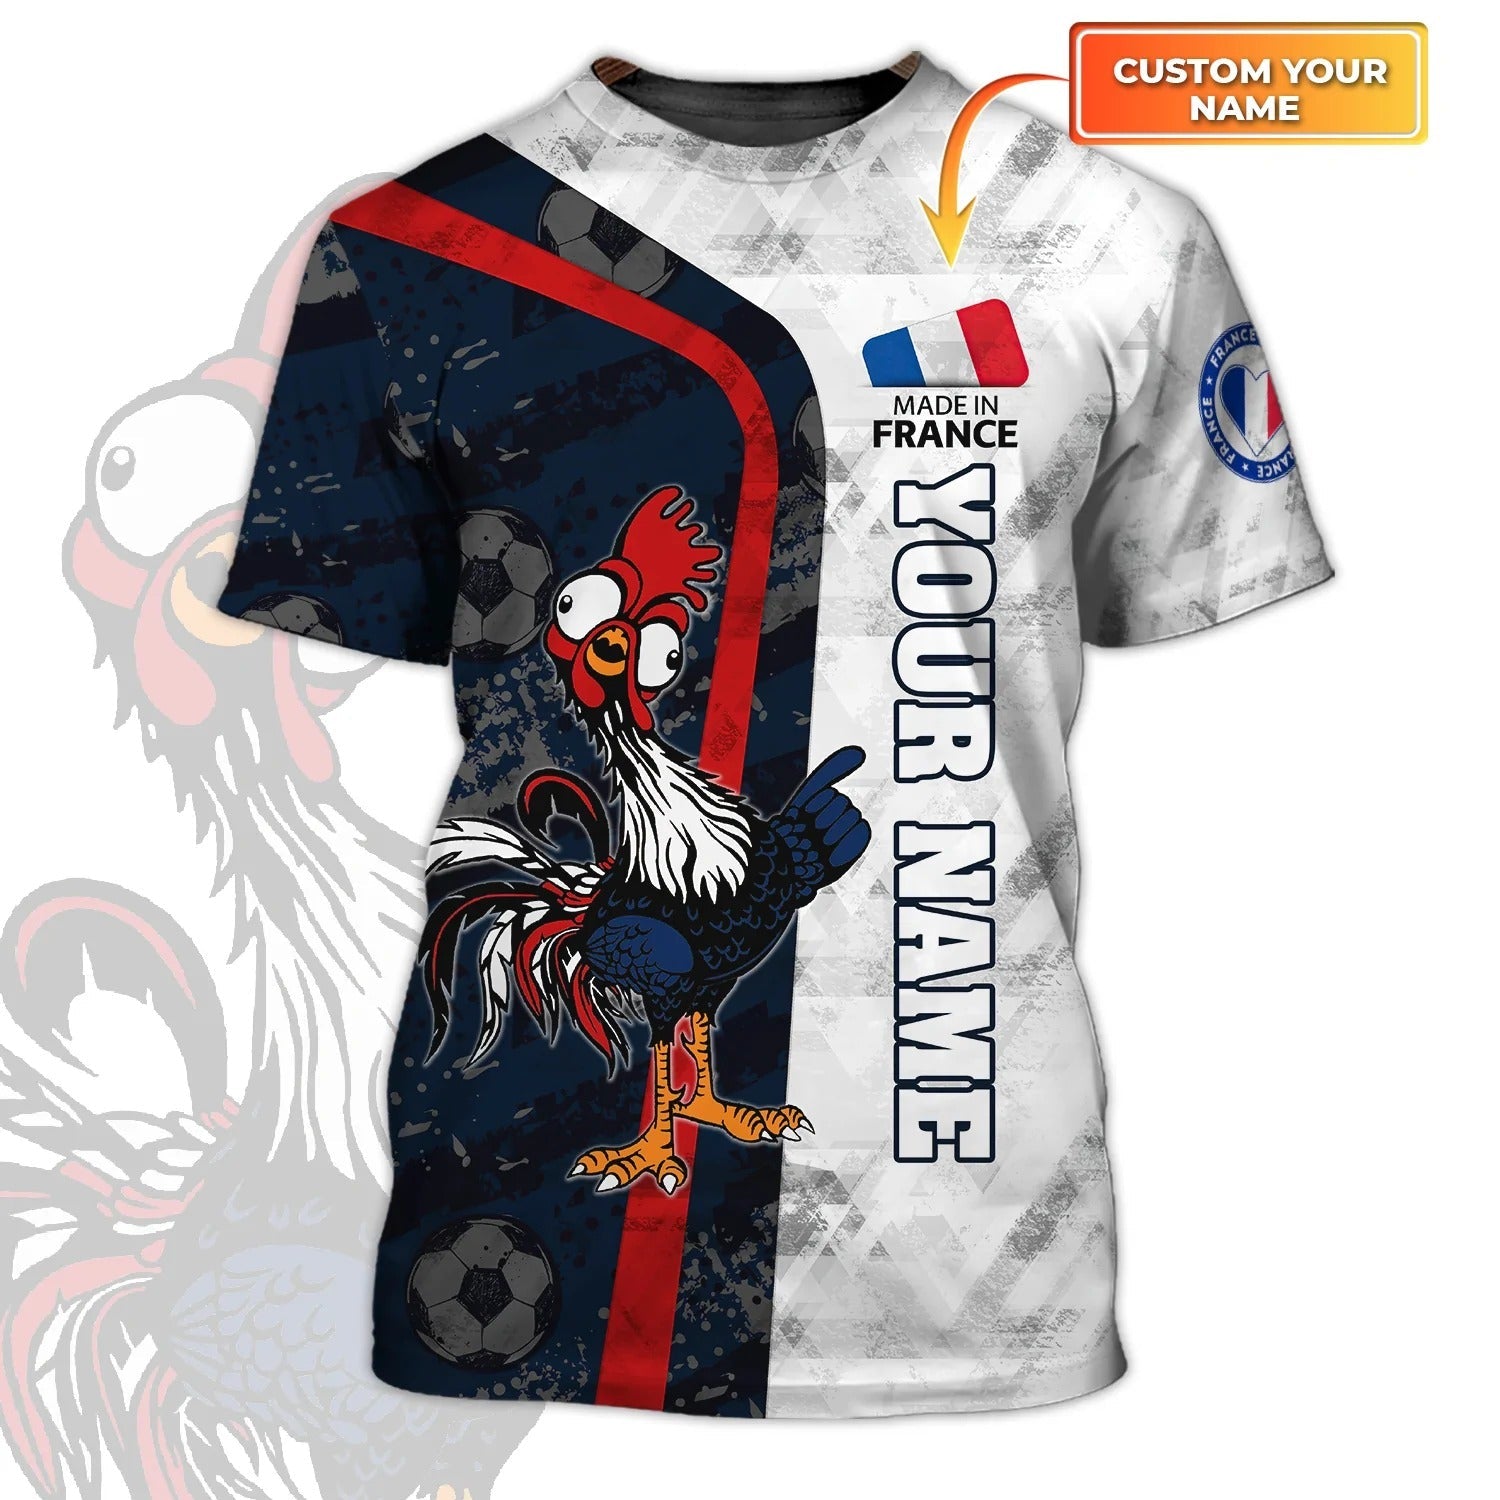 Rooster France Football T Shirt For Men Women/ Support France Football Team Shirt/ France Fan Gift